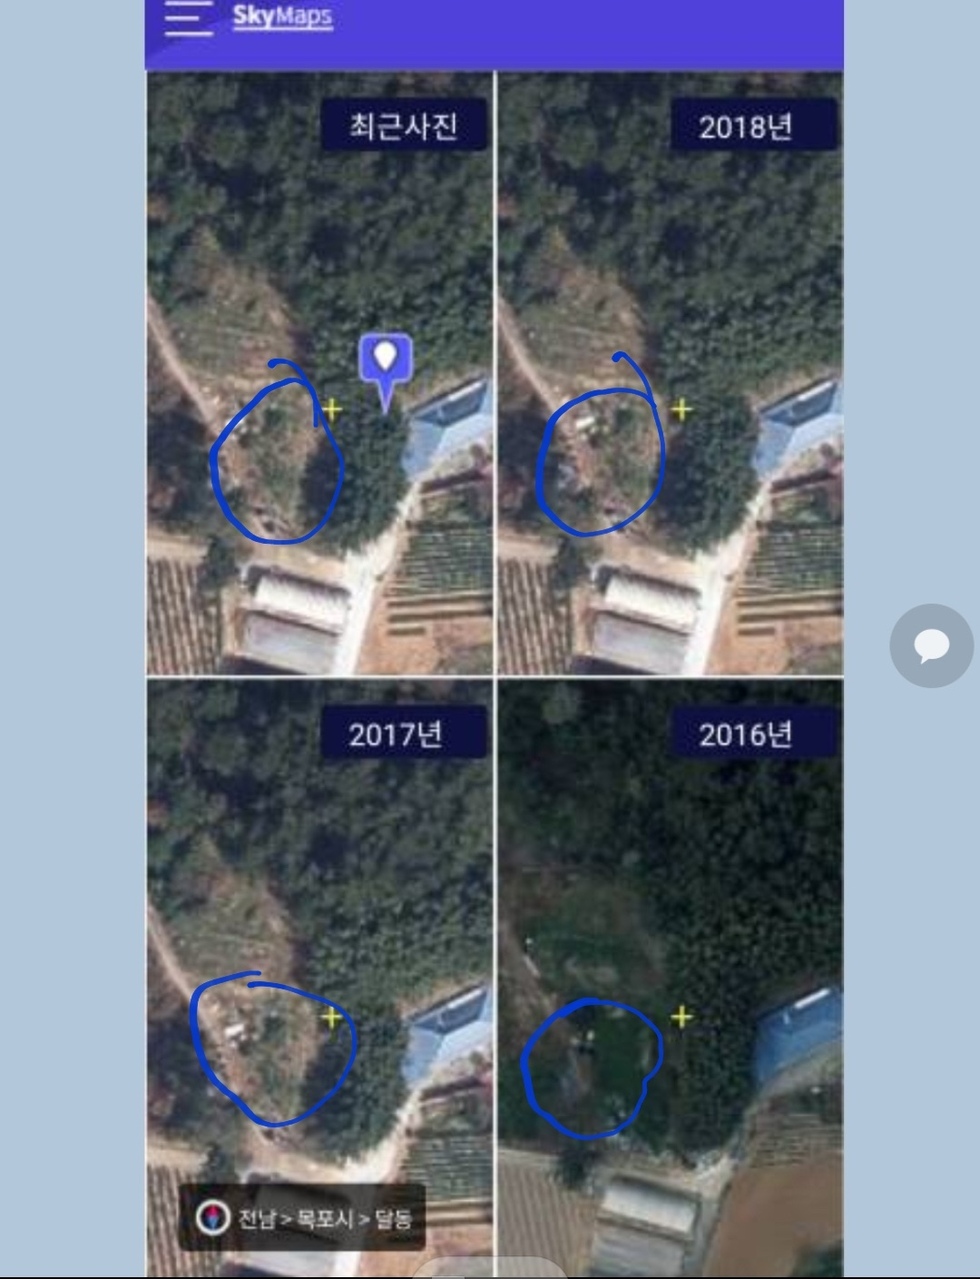 2016년, 2017년, 2018년, 현재 4개의 년도별 위성사진을 캡쳐한 모바일 화면